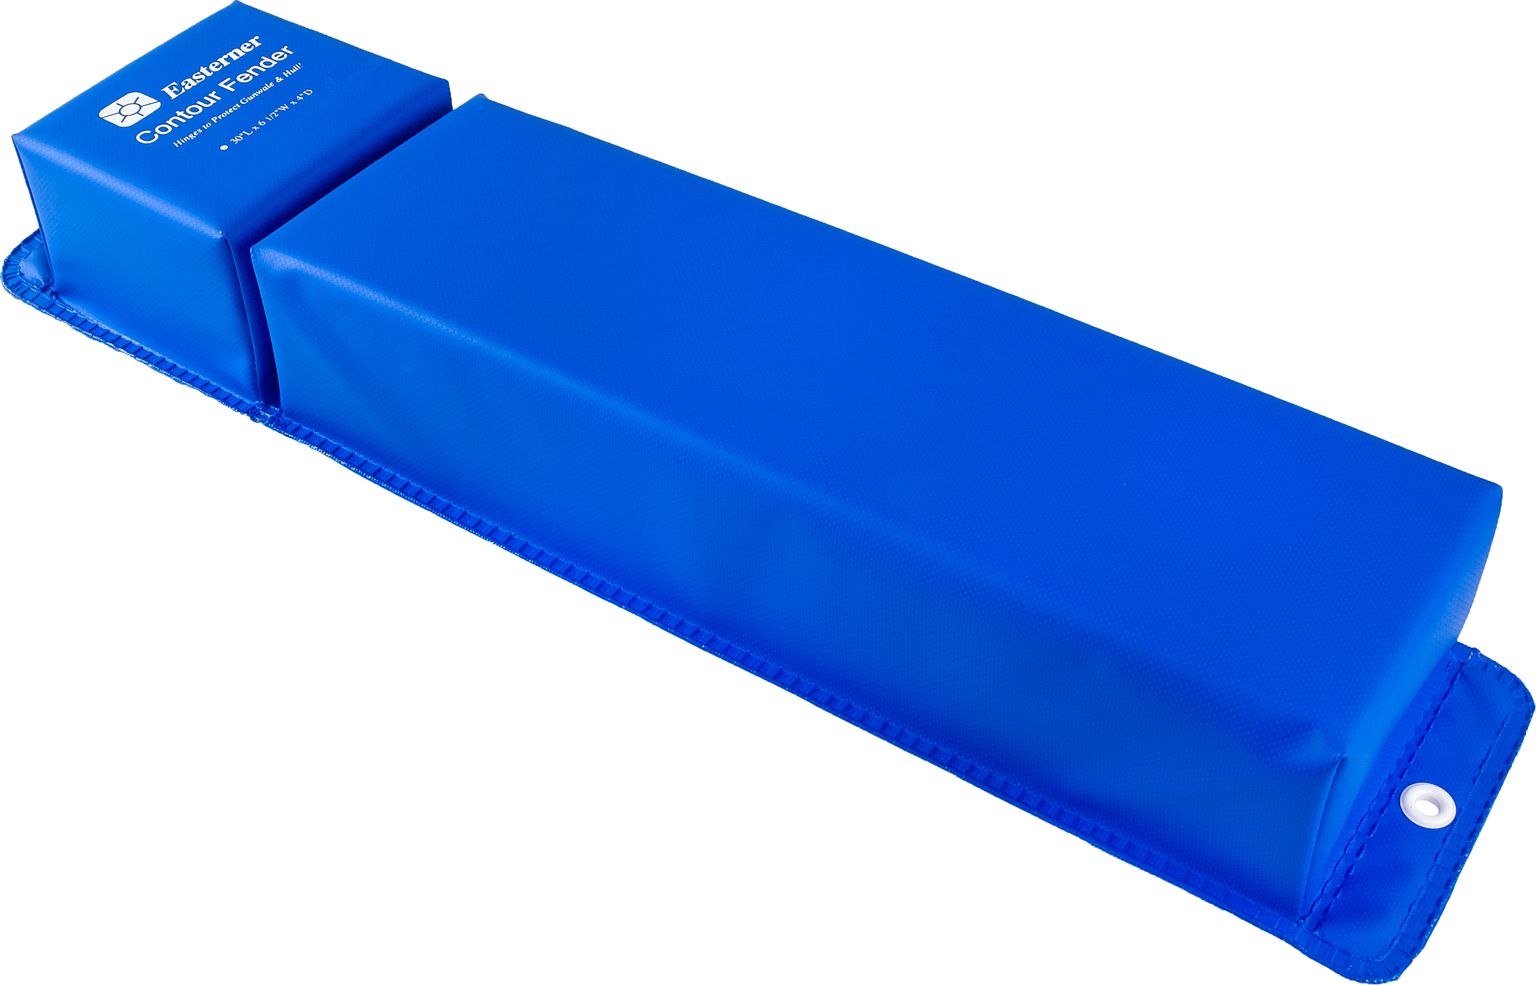 Кранец причальный угловой 760x155 мм, синий (упаковка из 10 шт.) C11930L_pkg_10 кранец надувной korf 5 720х220 мм синий more 10005520